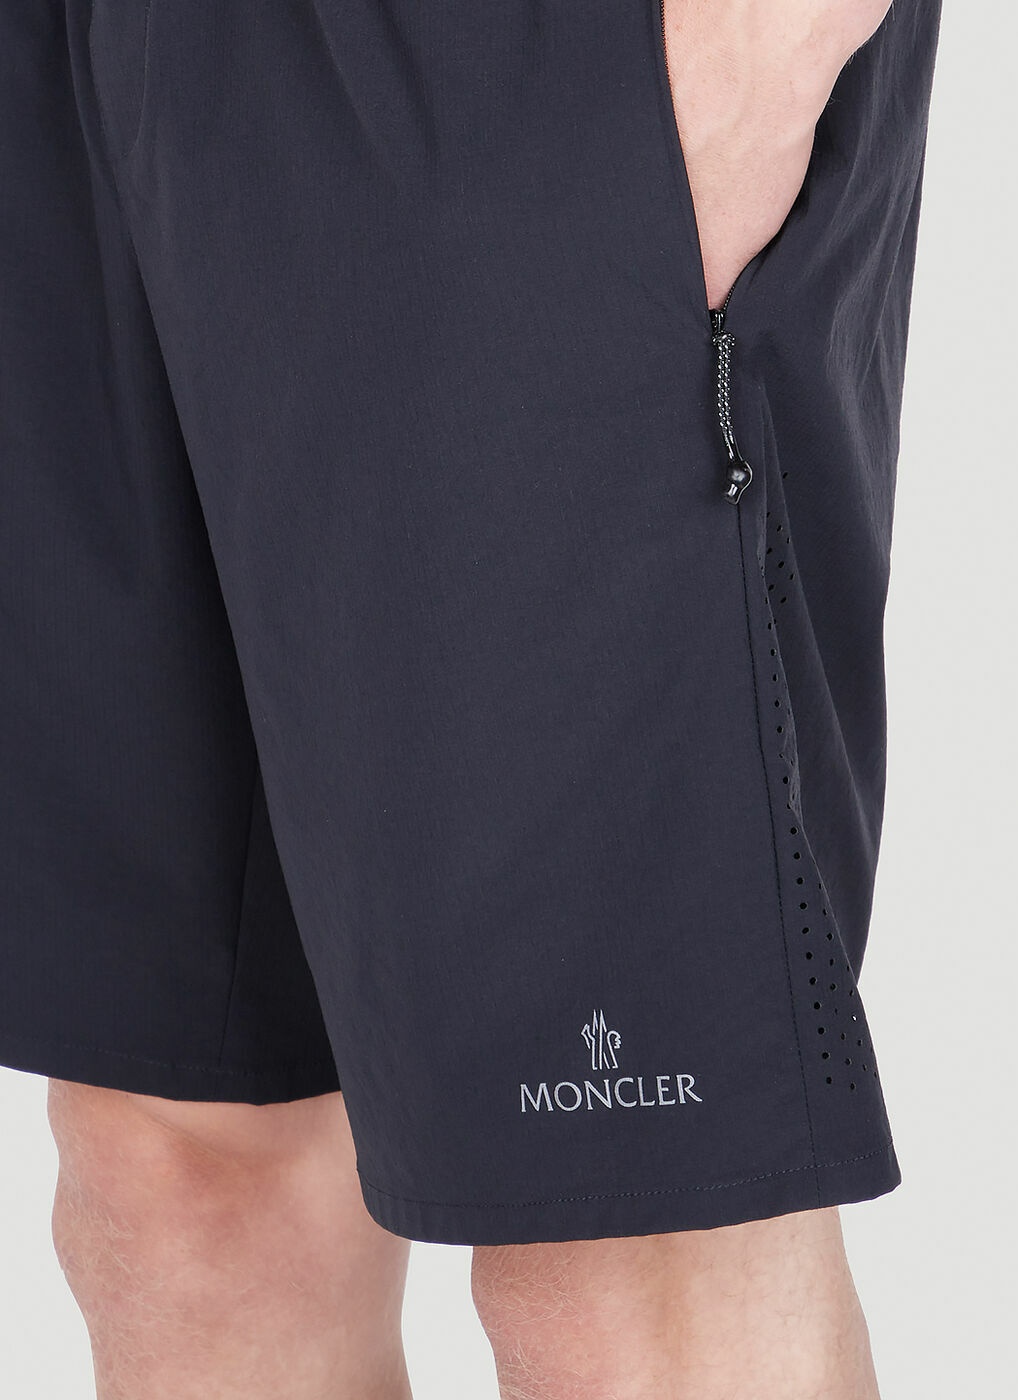 Moncler - Track Shorts in Black Moncler